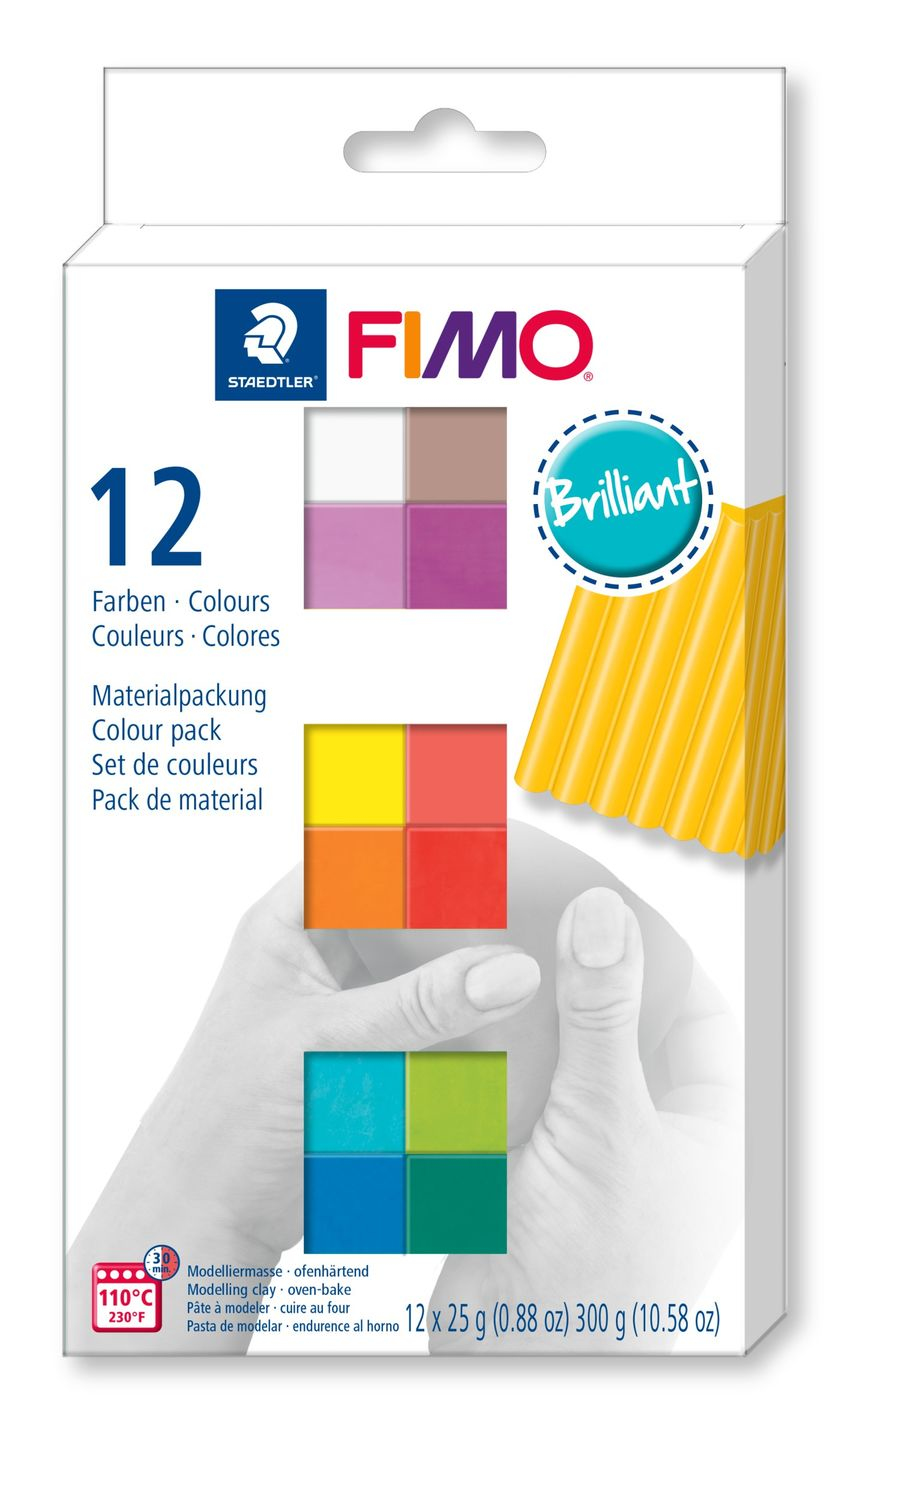 STAEDTLER FIMO Soft Modelliermasse Set 12 x 25 g - Knetmasse - Gemischte Farben - Erwachsene - 12 Stück(e) - 110 °C - 30 min